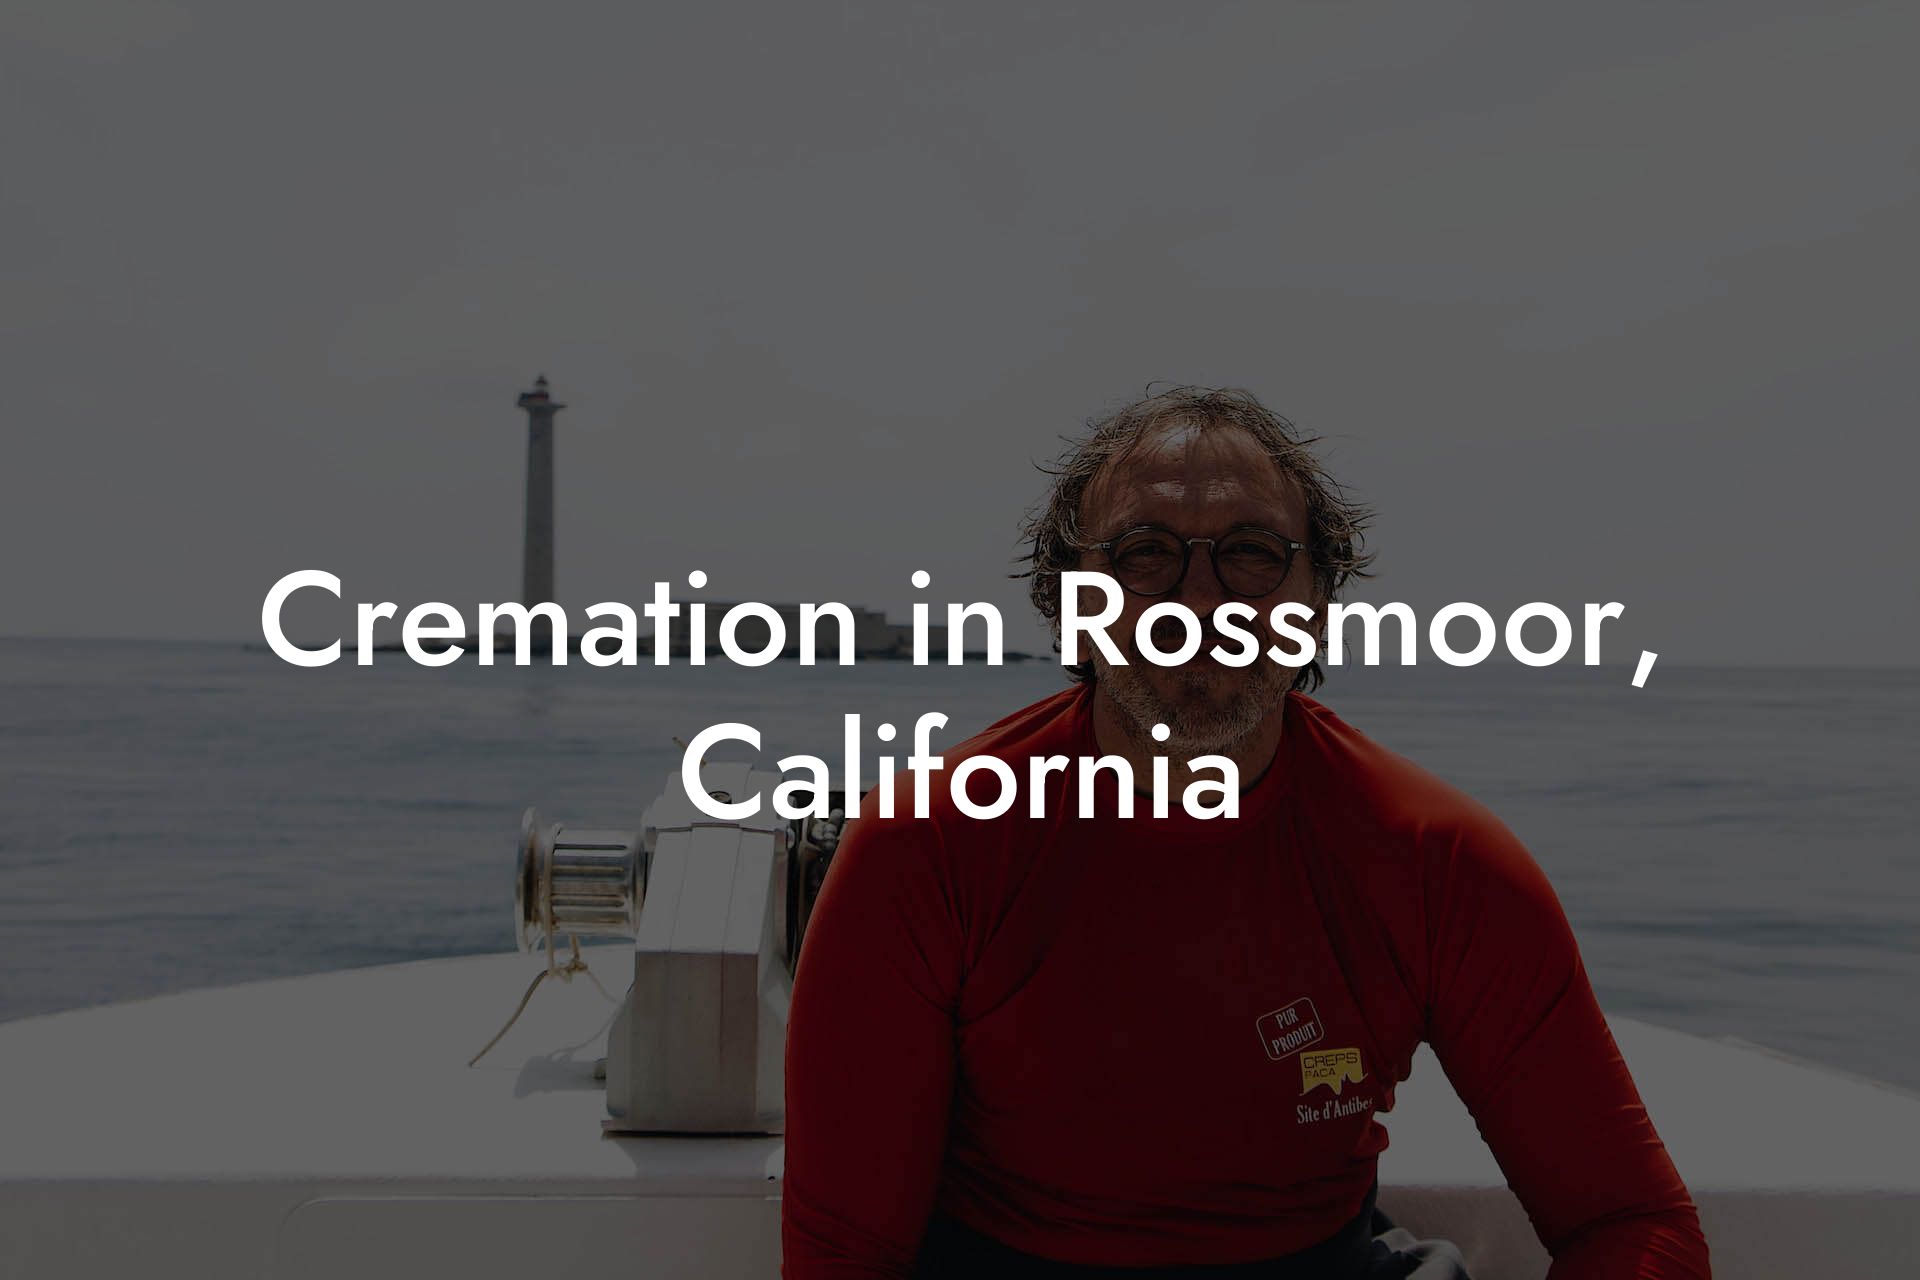 Cremation in Rossmoor, California